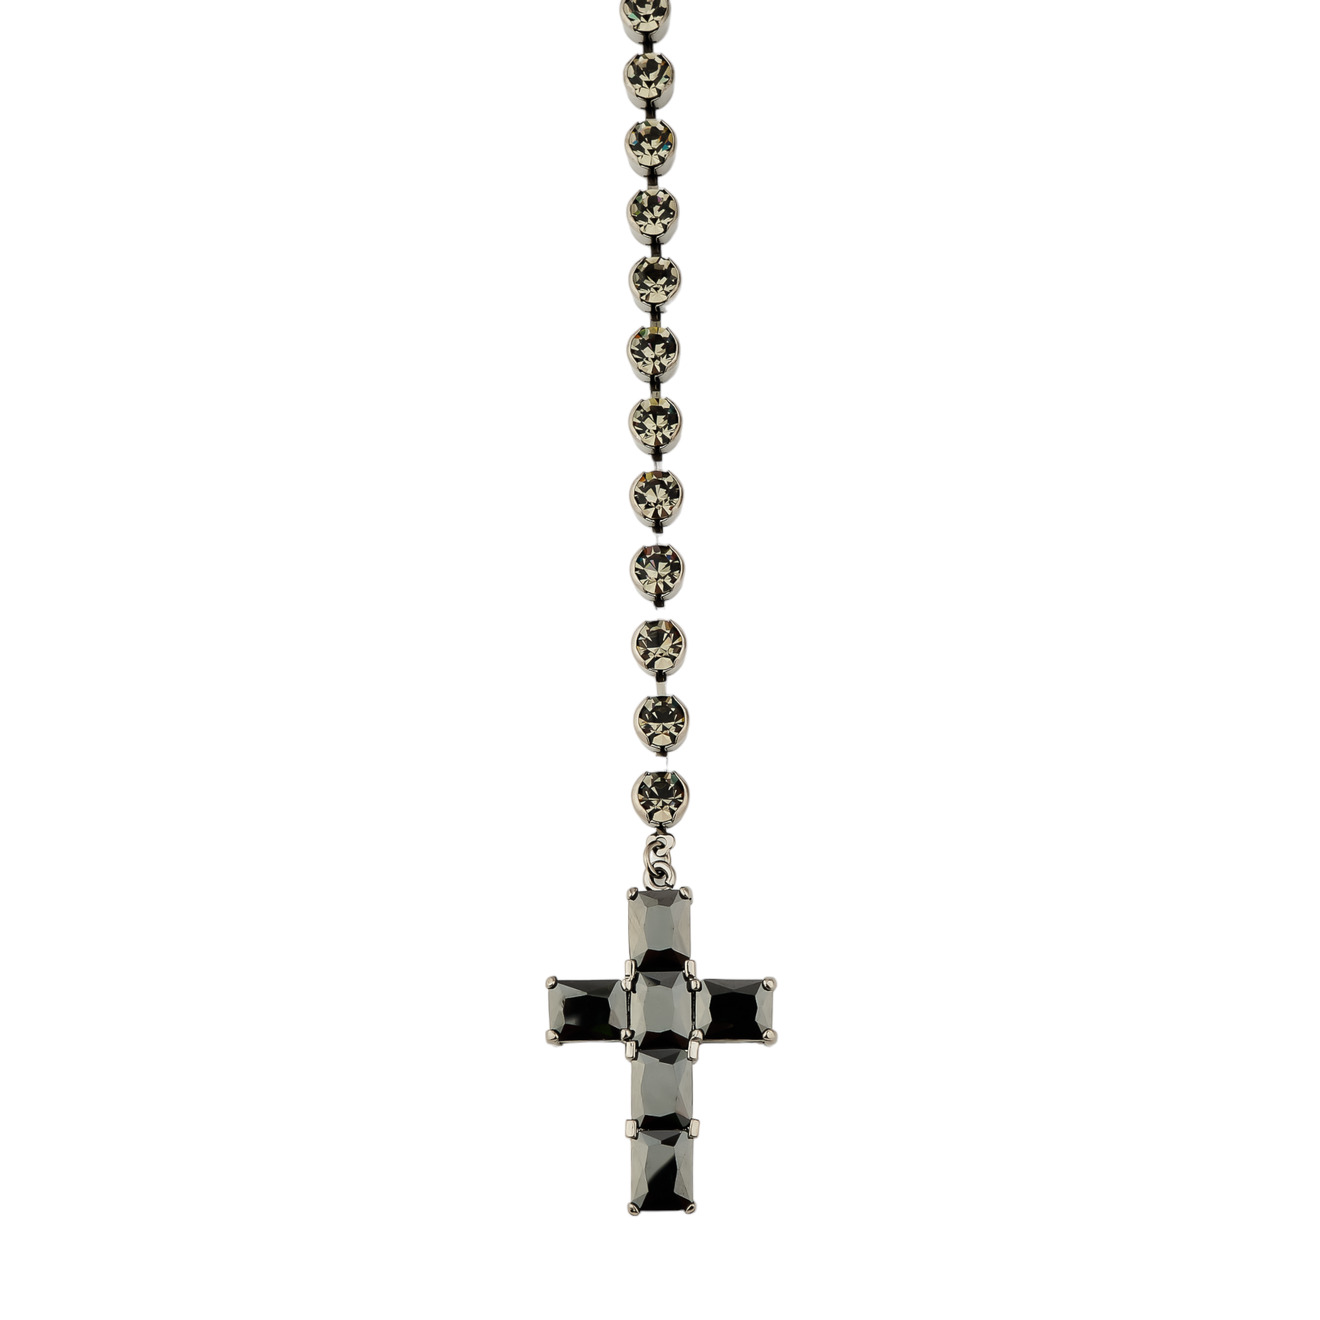 Herald Percy Сотуар с кристаллами и подвеской крестом черного цвета herald percy серебристый сотуар полностью покрытый кристаллами